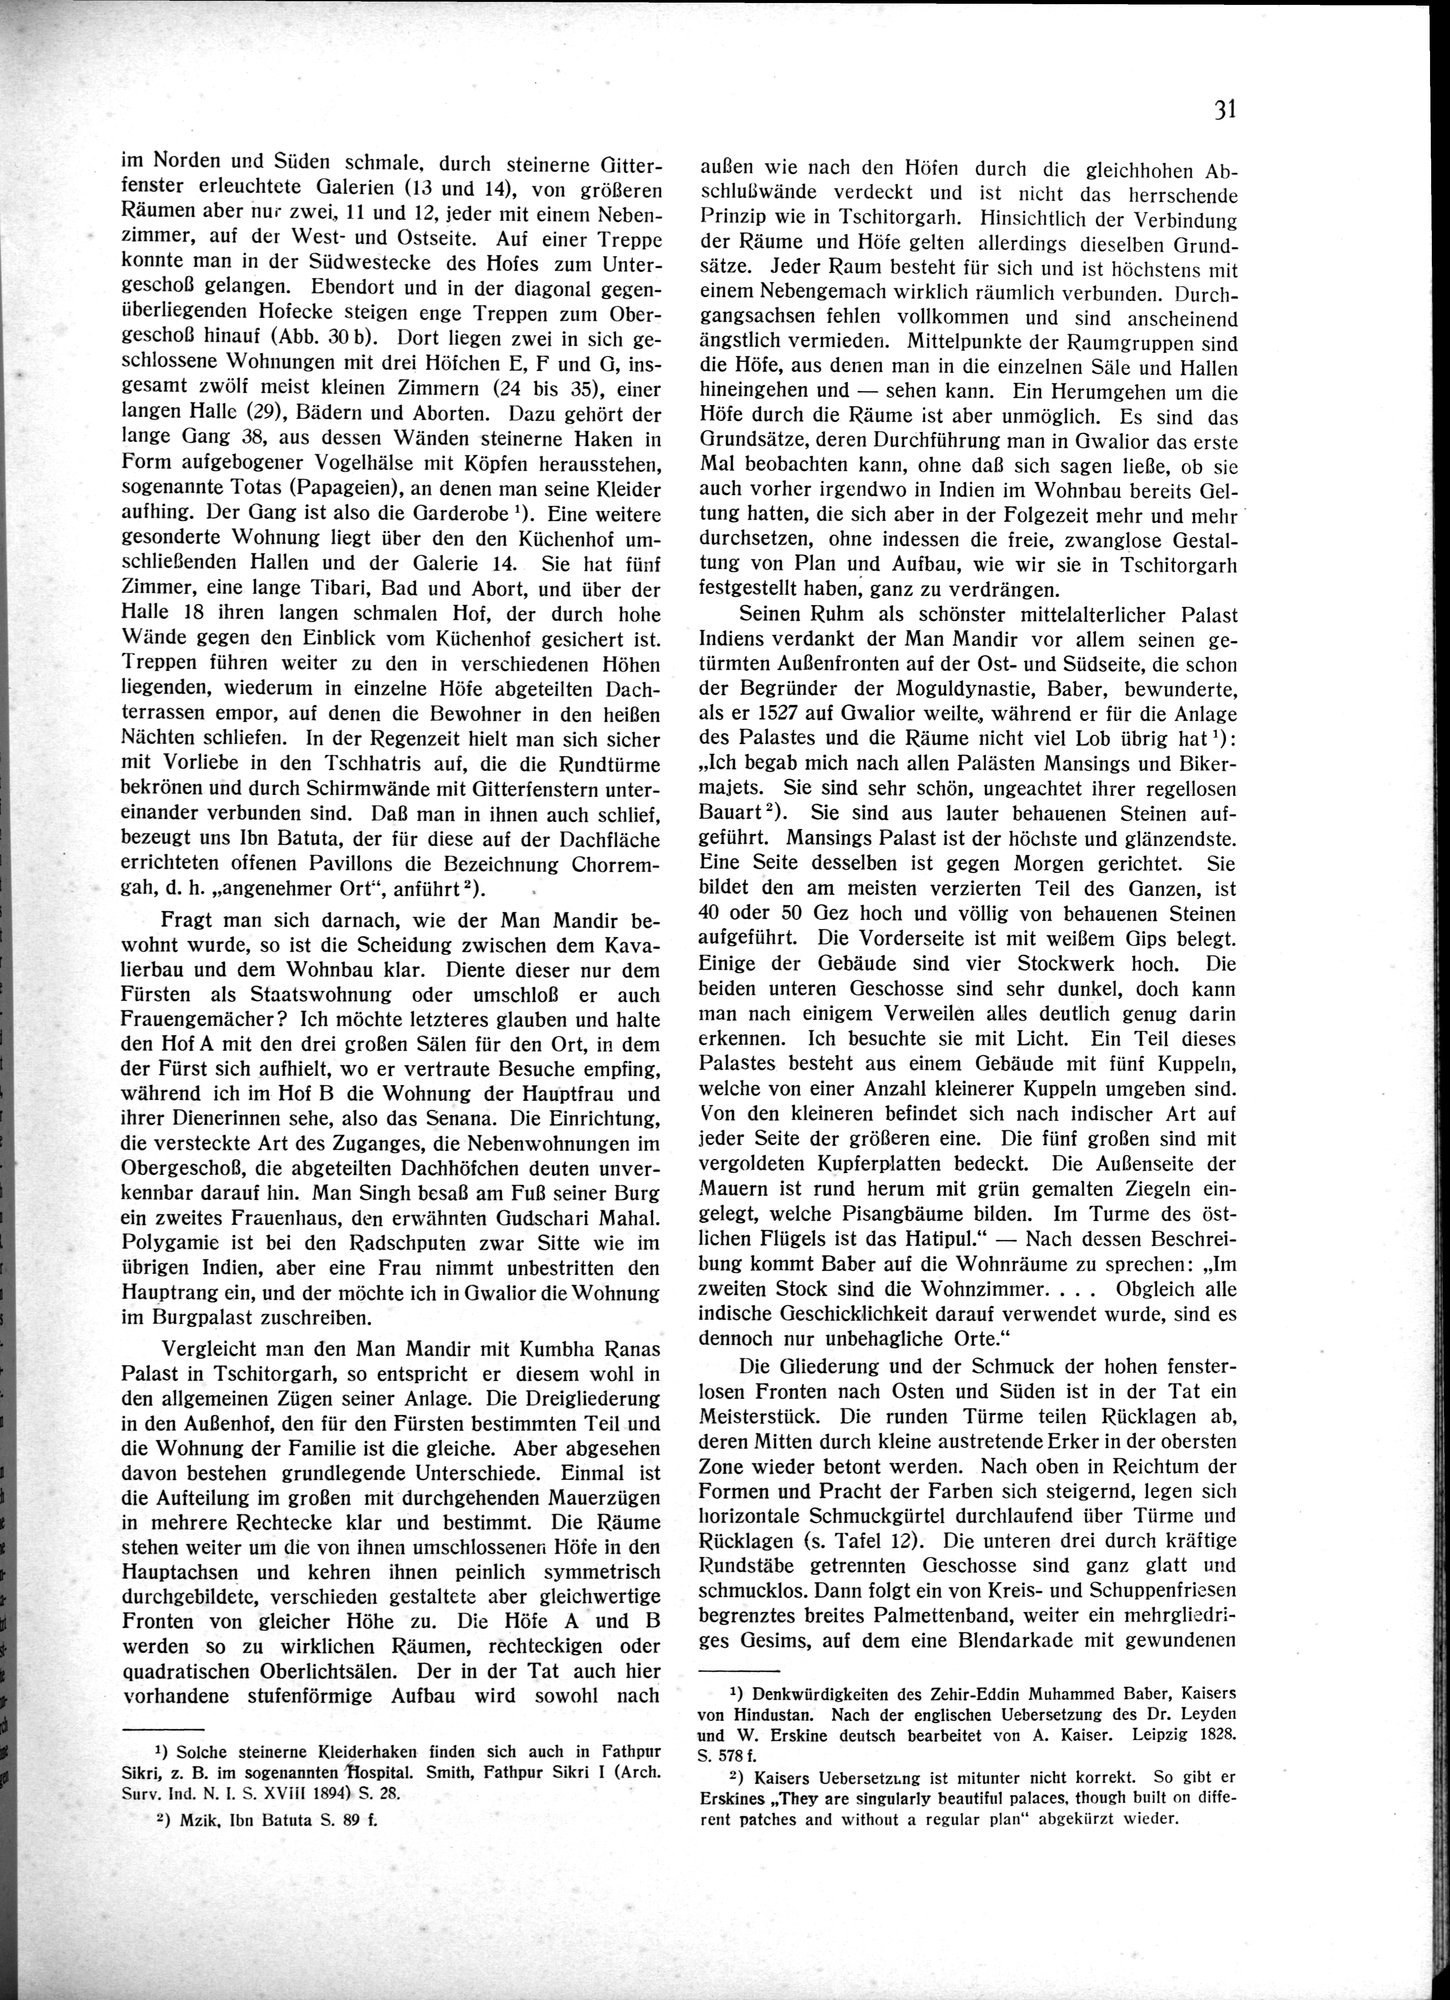 Indische Palaste und Wohnhauser : vol.1 / Page 41 (Grayscale High Resolution Image)